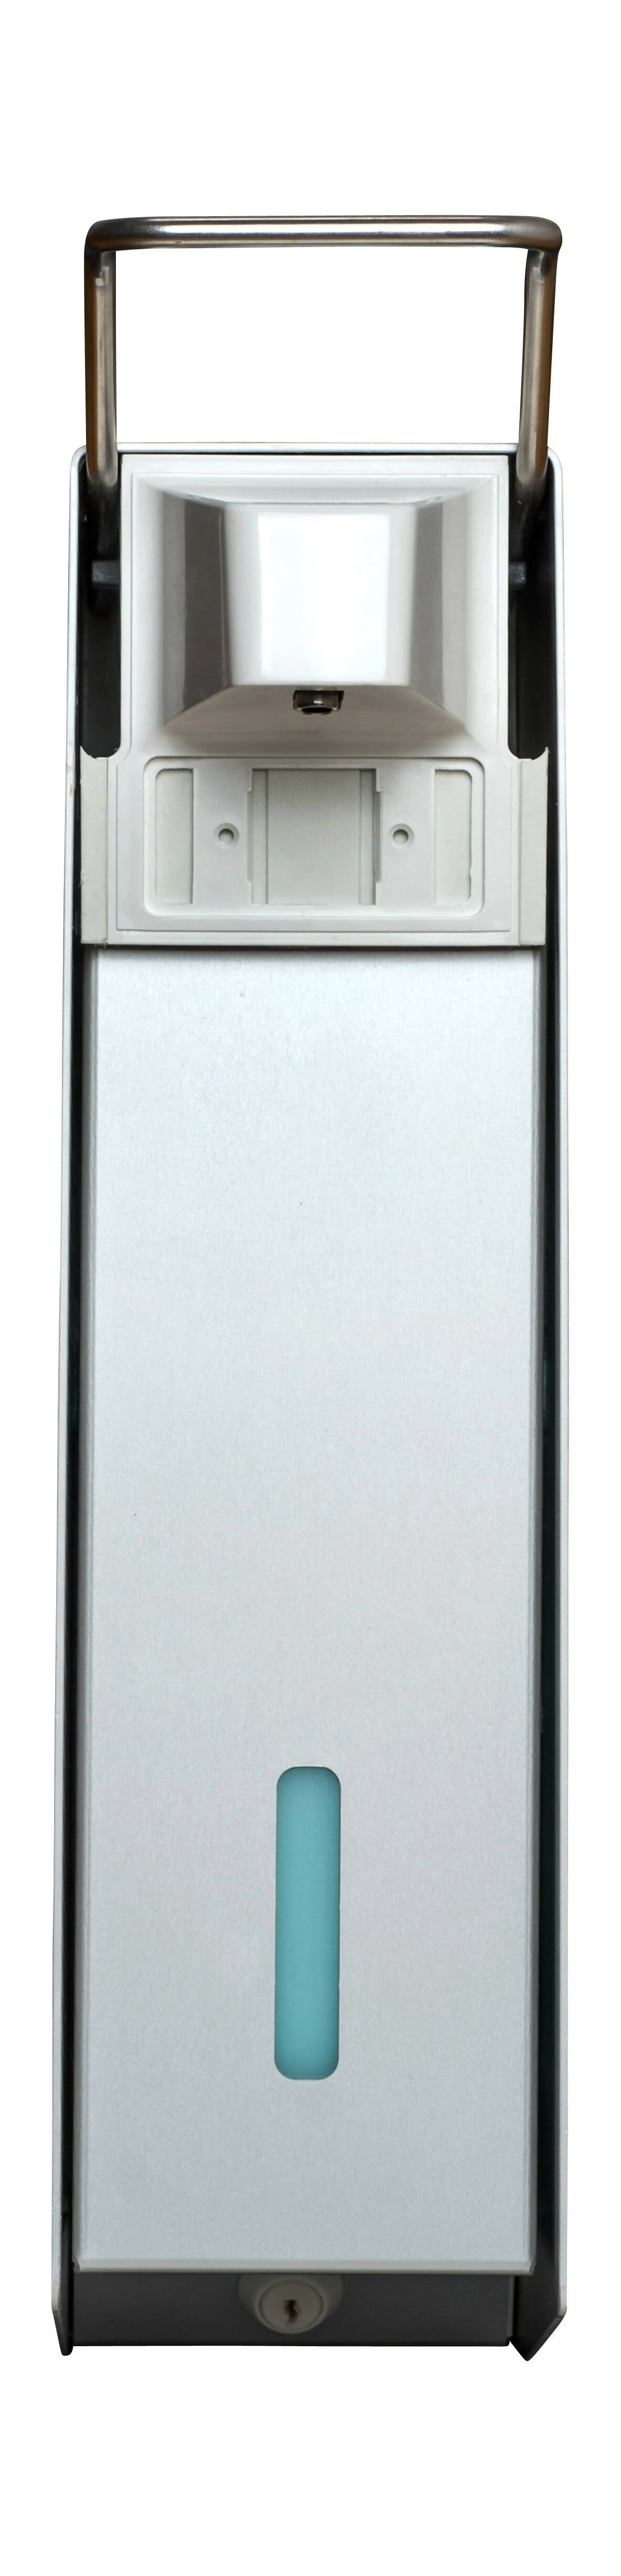 SORIFA - Lot de 2 - Distributeur mural métallique robuste, ergonomique, verrouillable pour flacon 2.5L de marque SORIFA - Pour gels et savons liquides. - 0